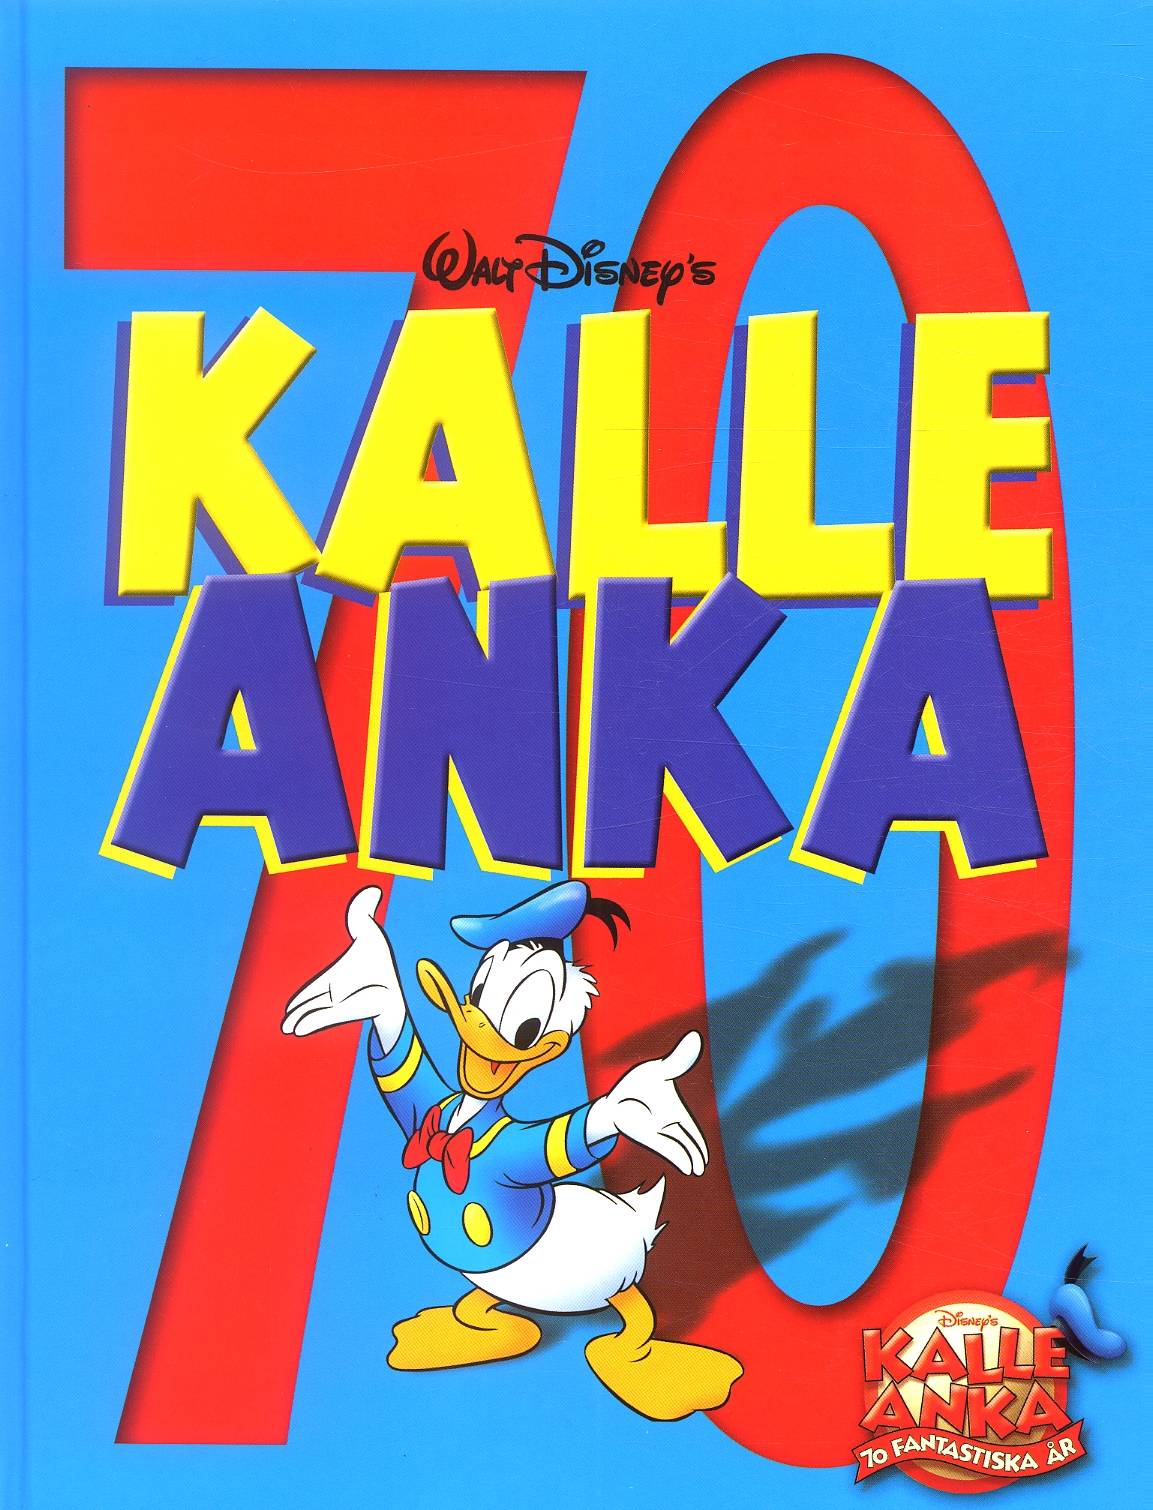 Kalle Anka 70 år